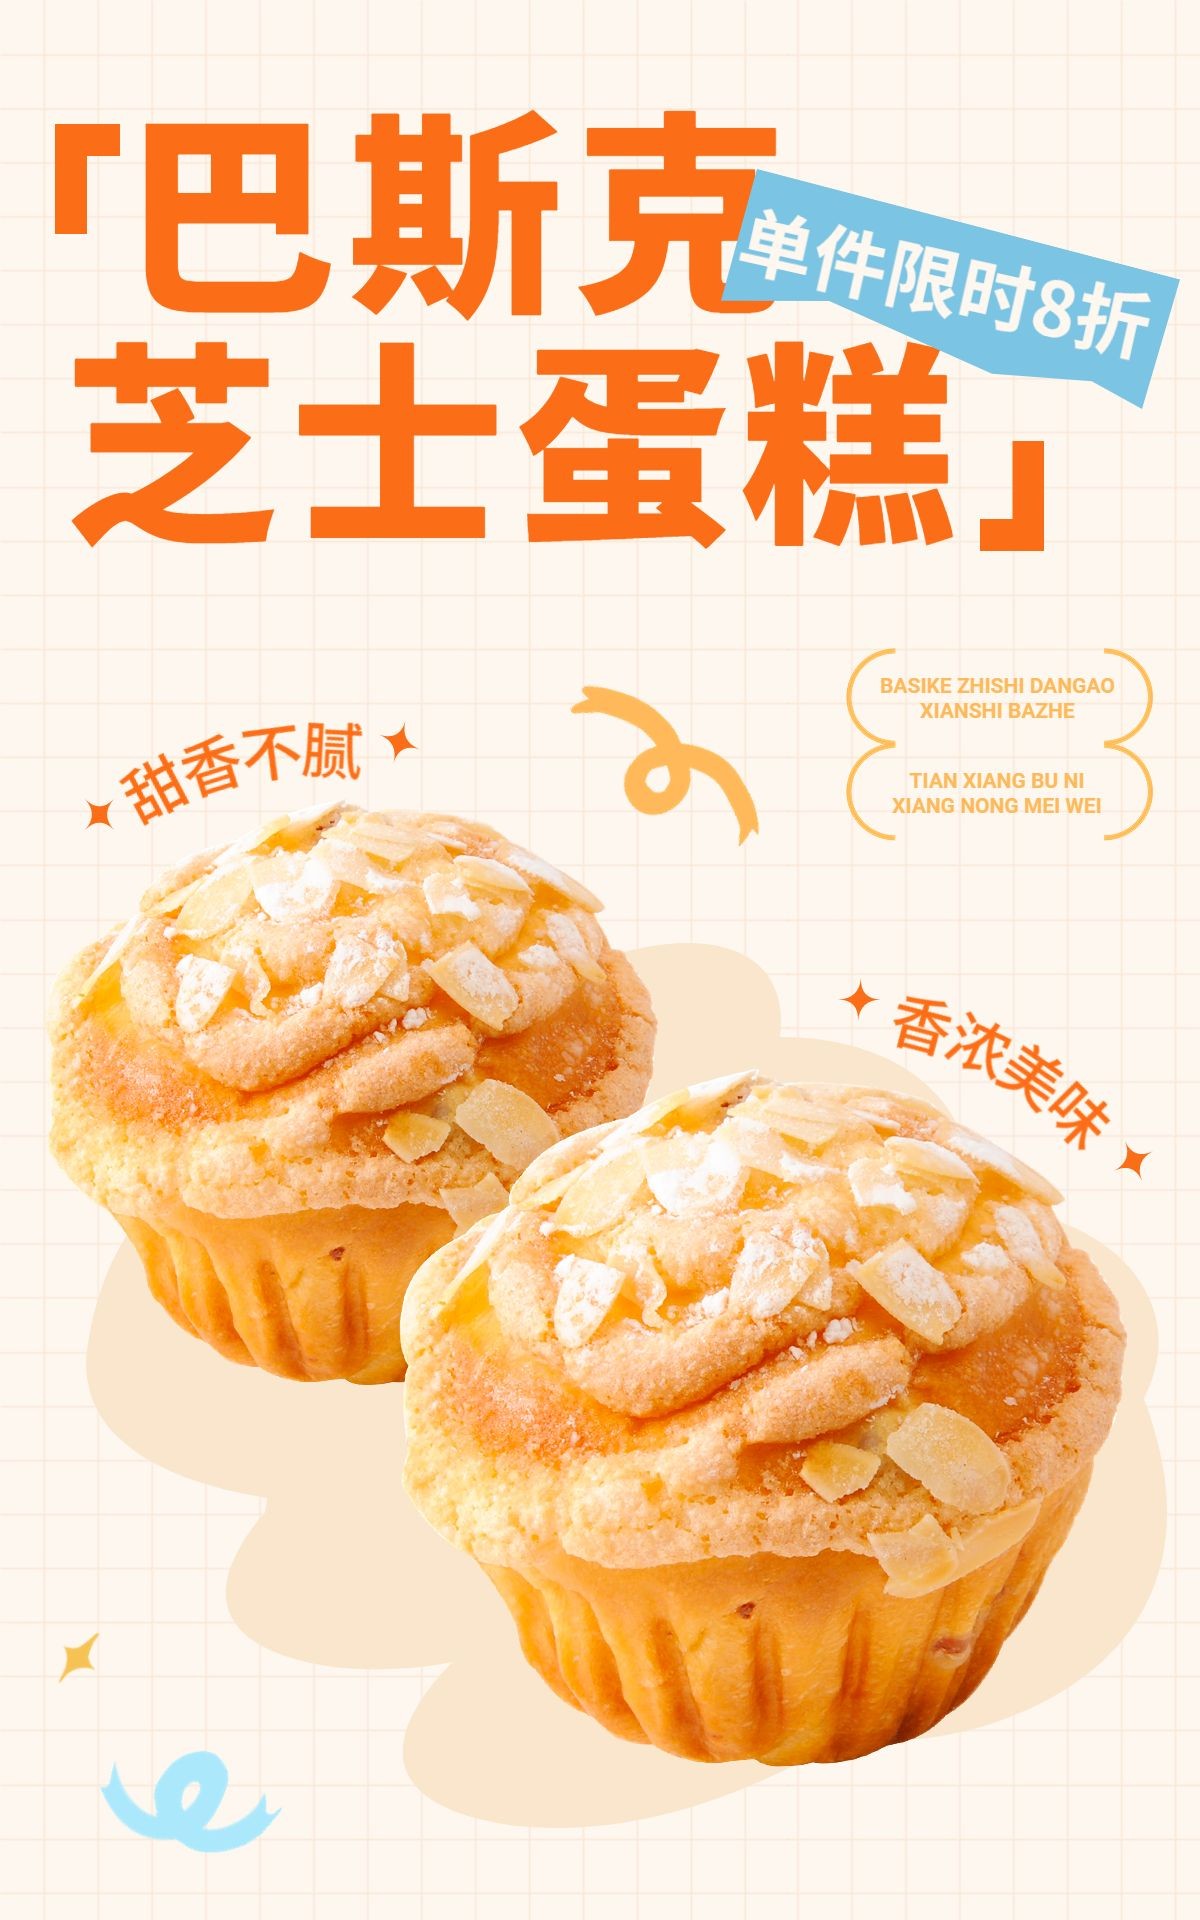 电商烘焙甜品促销活动电商竖版海报预览效果